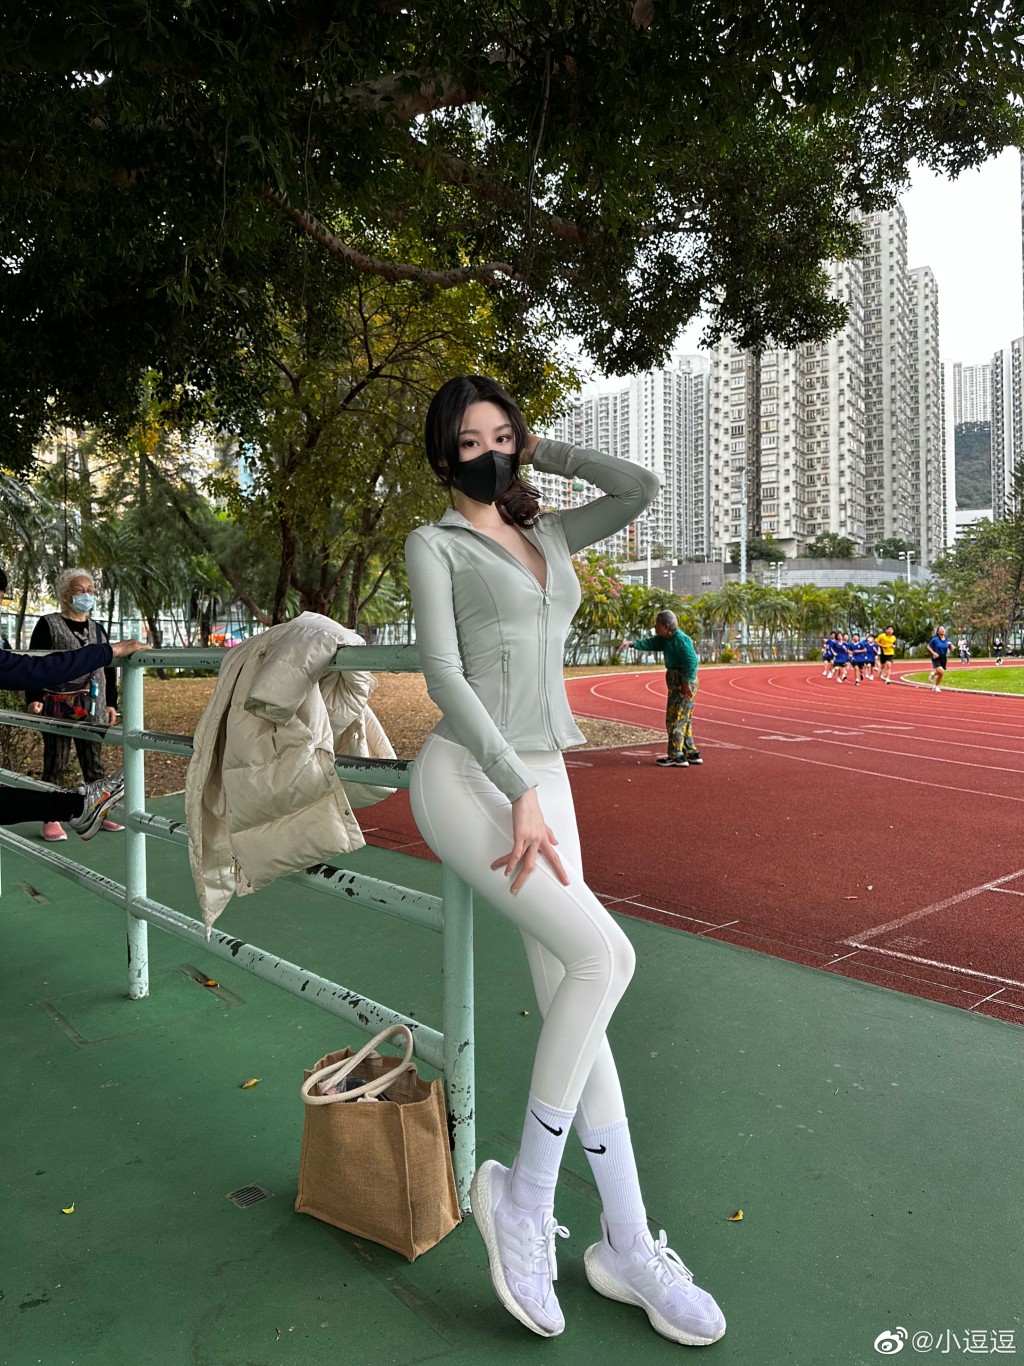 在香港一個運動場拍照。